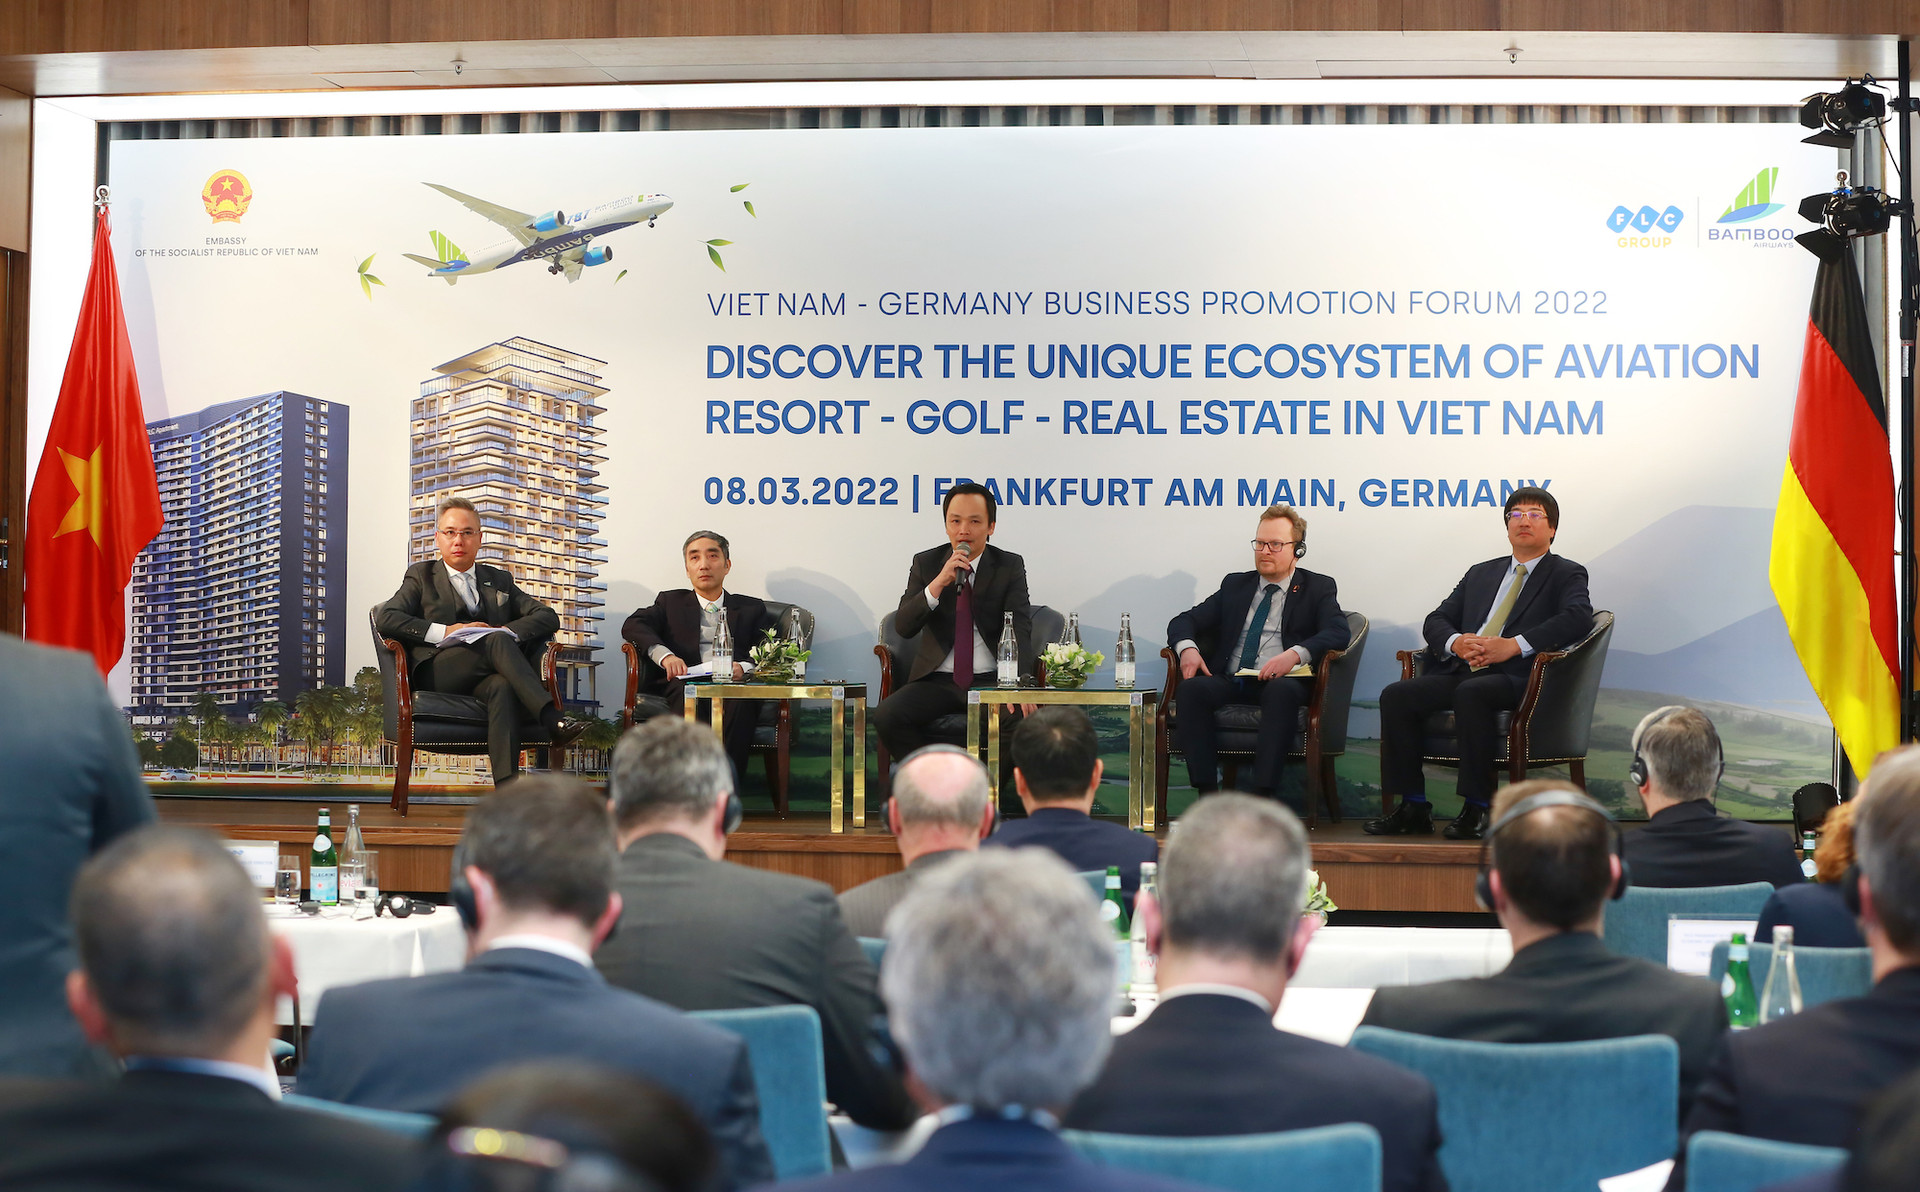 Nhiều nhà đầu tư Đức bày tỏ sự quan tâm đối với làn sóng dịch chuyển đầu tư về du lịch, bất động sản nghỉ dưỡng tại các thị trường mới của Việt Nam.